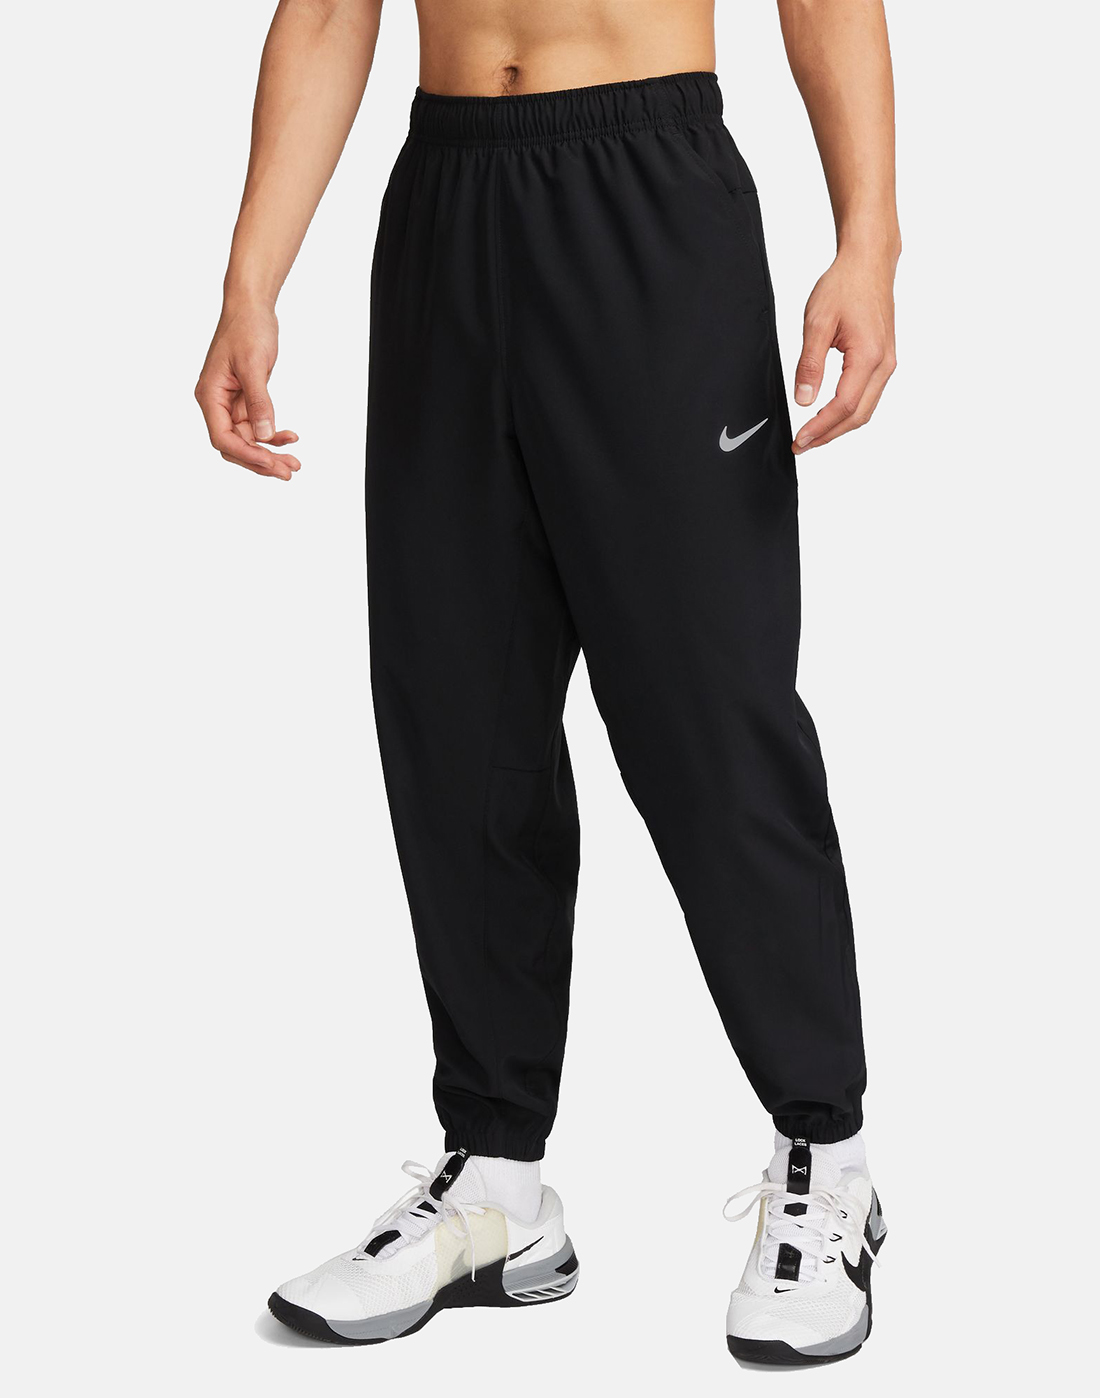 Nike Mens Form Train Woven Taper Pants - Black | Life Style Sports UK